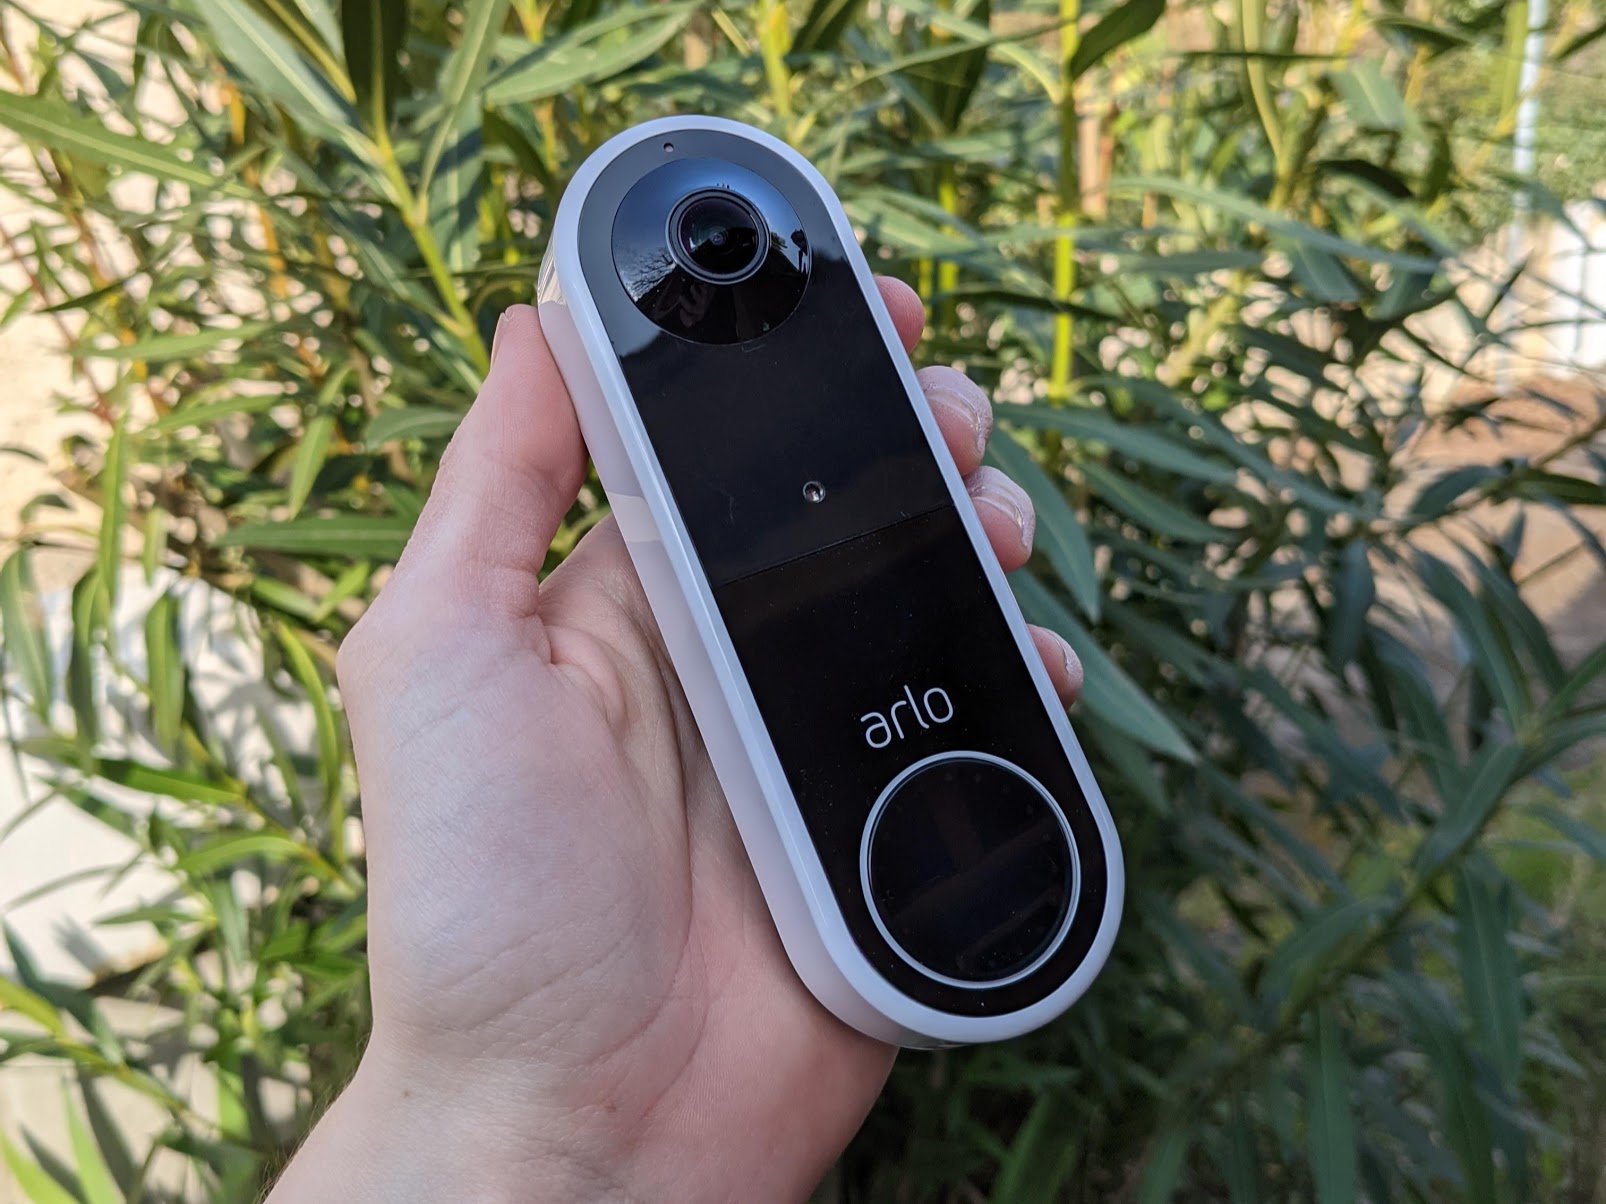 Test Ring Battery Doorbell Plus : une sonnette vidéo complète